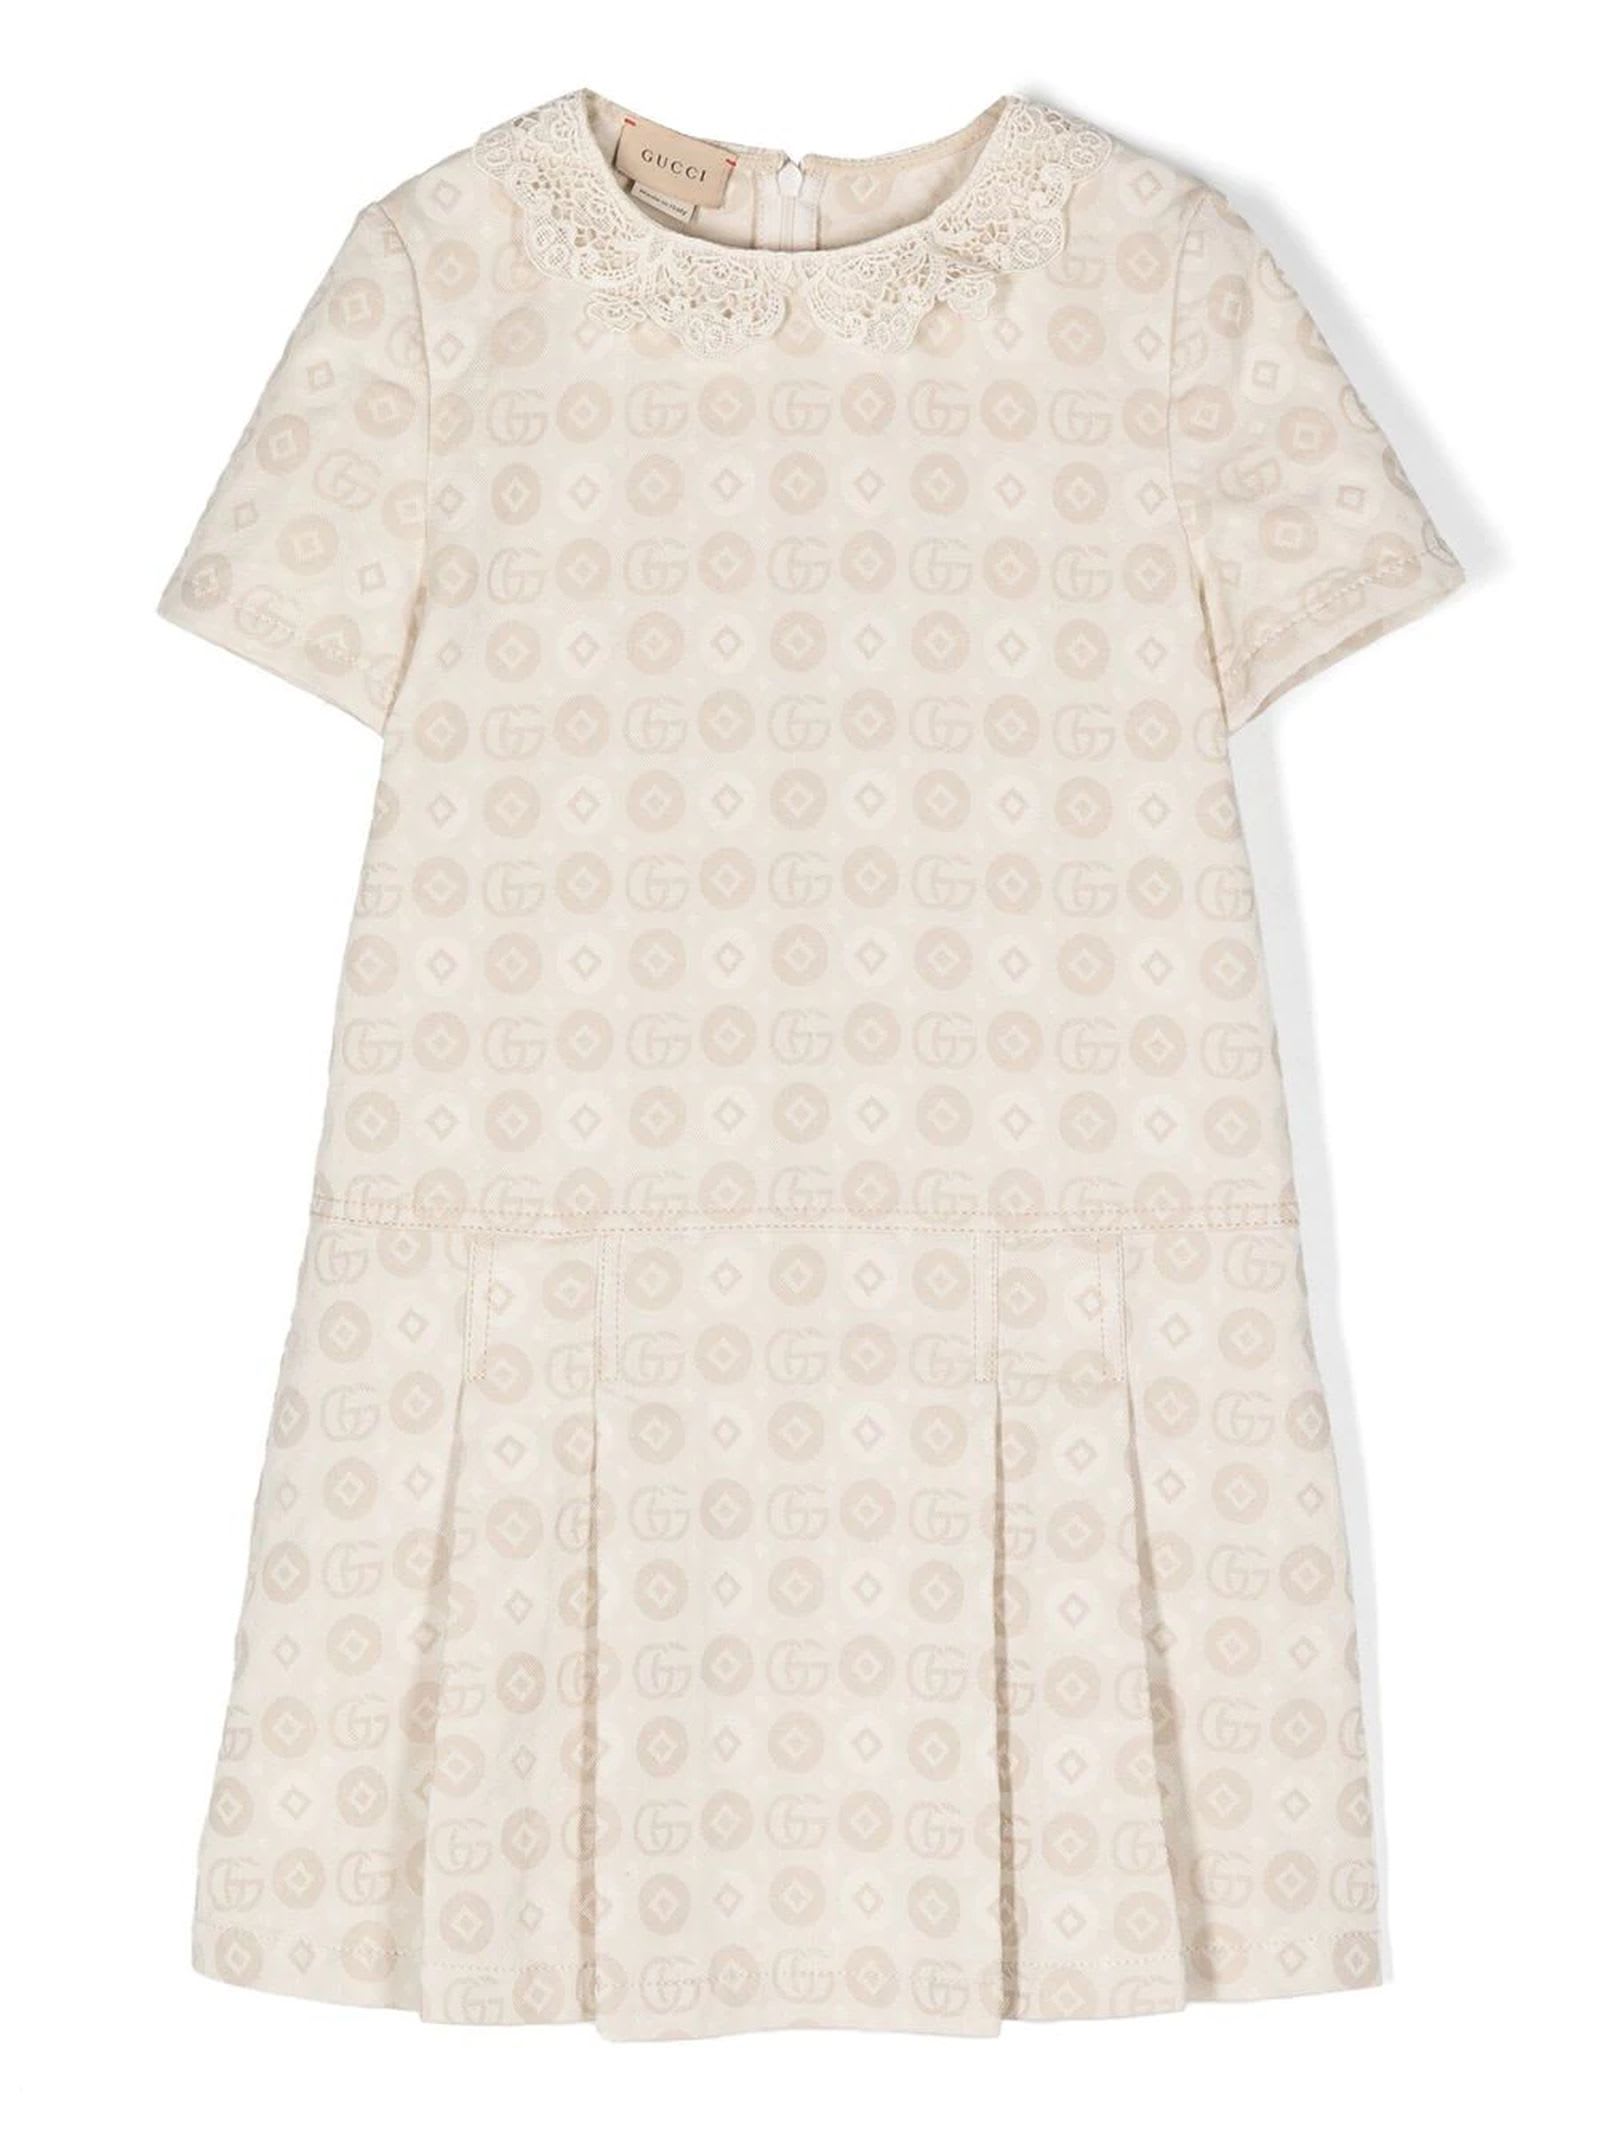 Gucci Ivory Cotton Dress